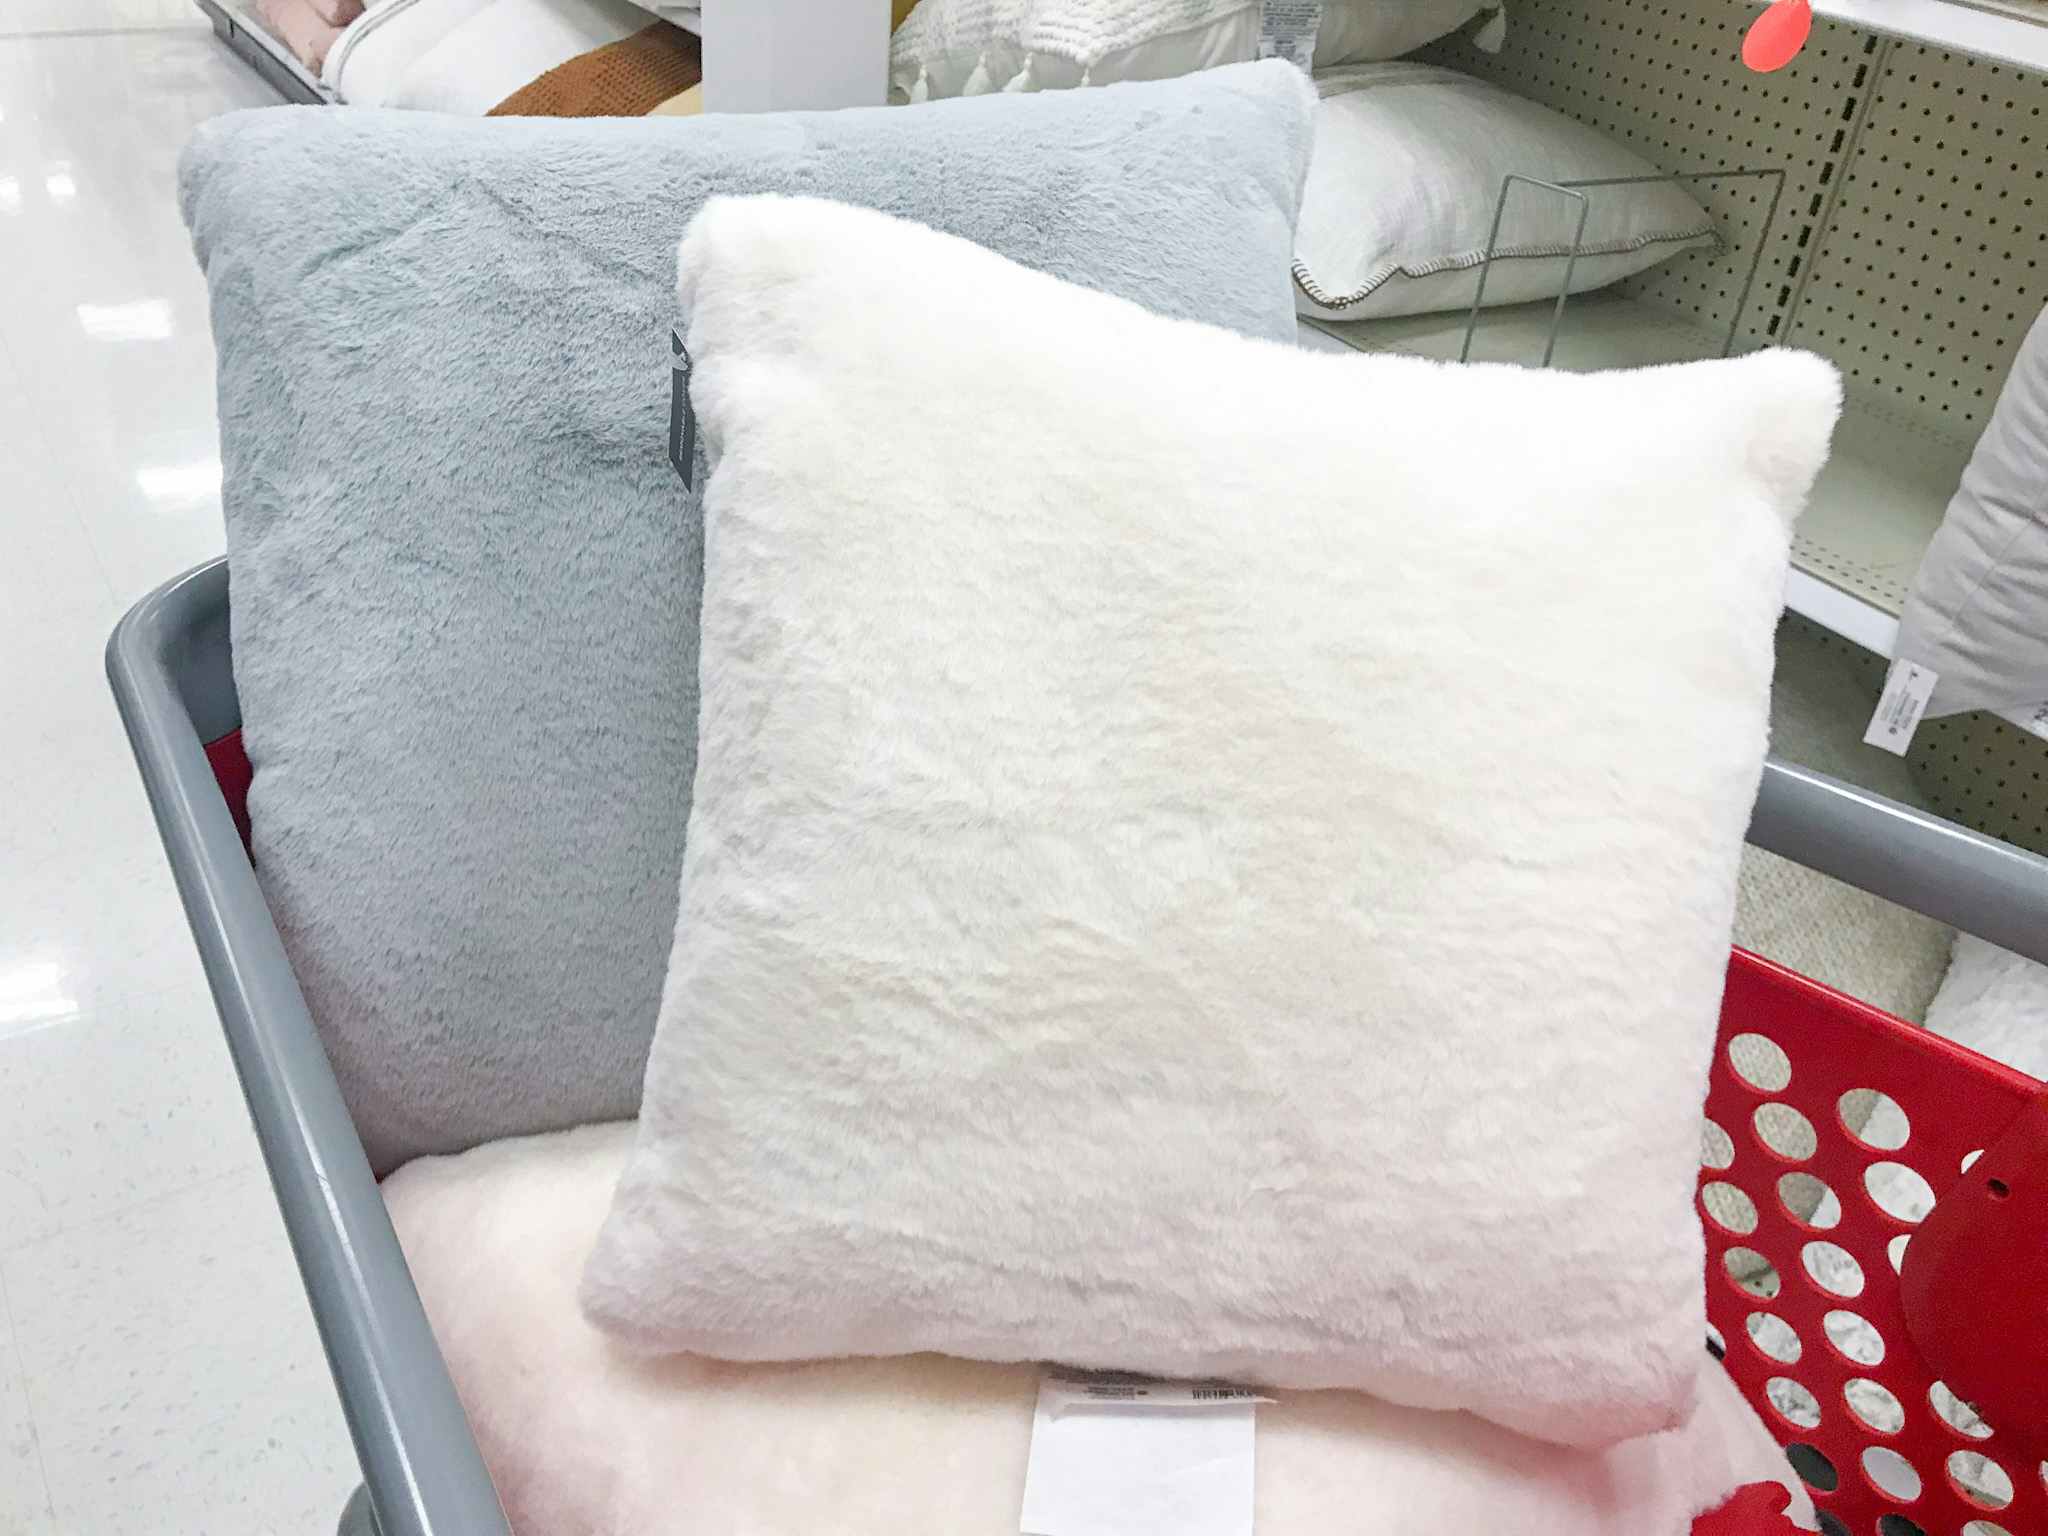 Three faux rabbit fur throw pillows in a Target shopping cart.